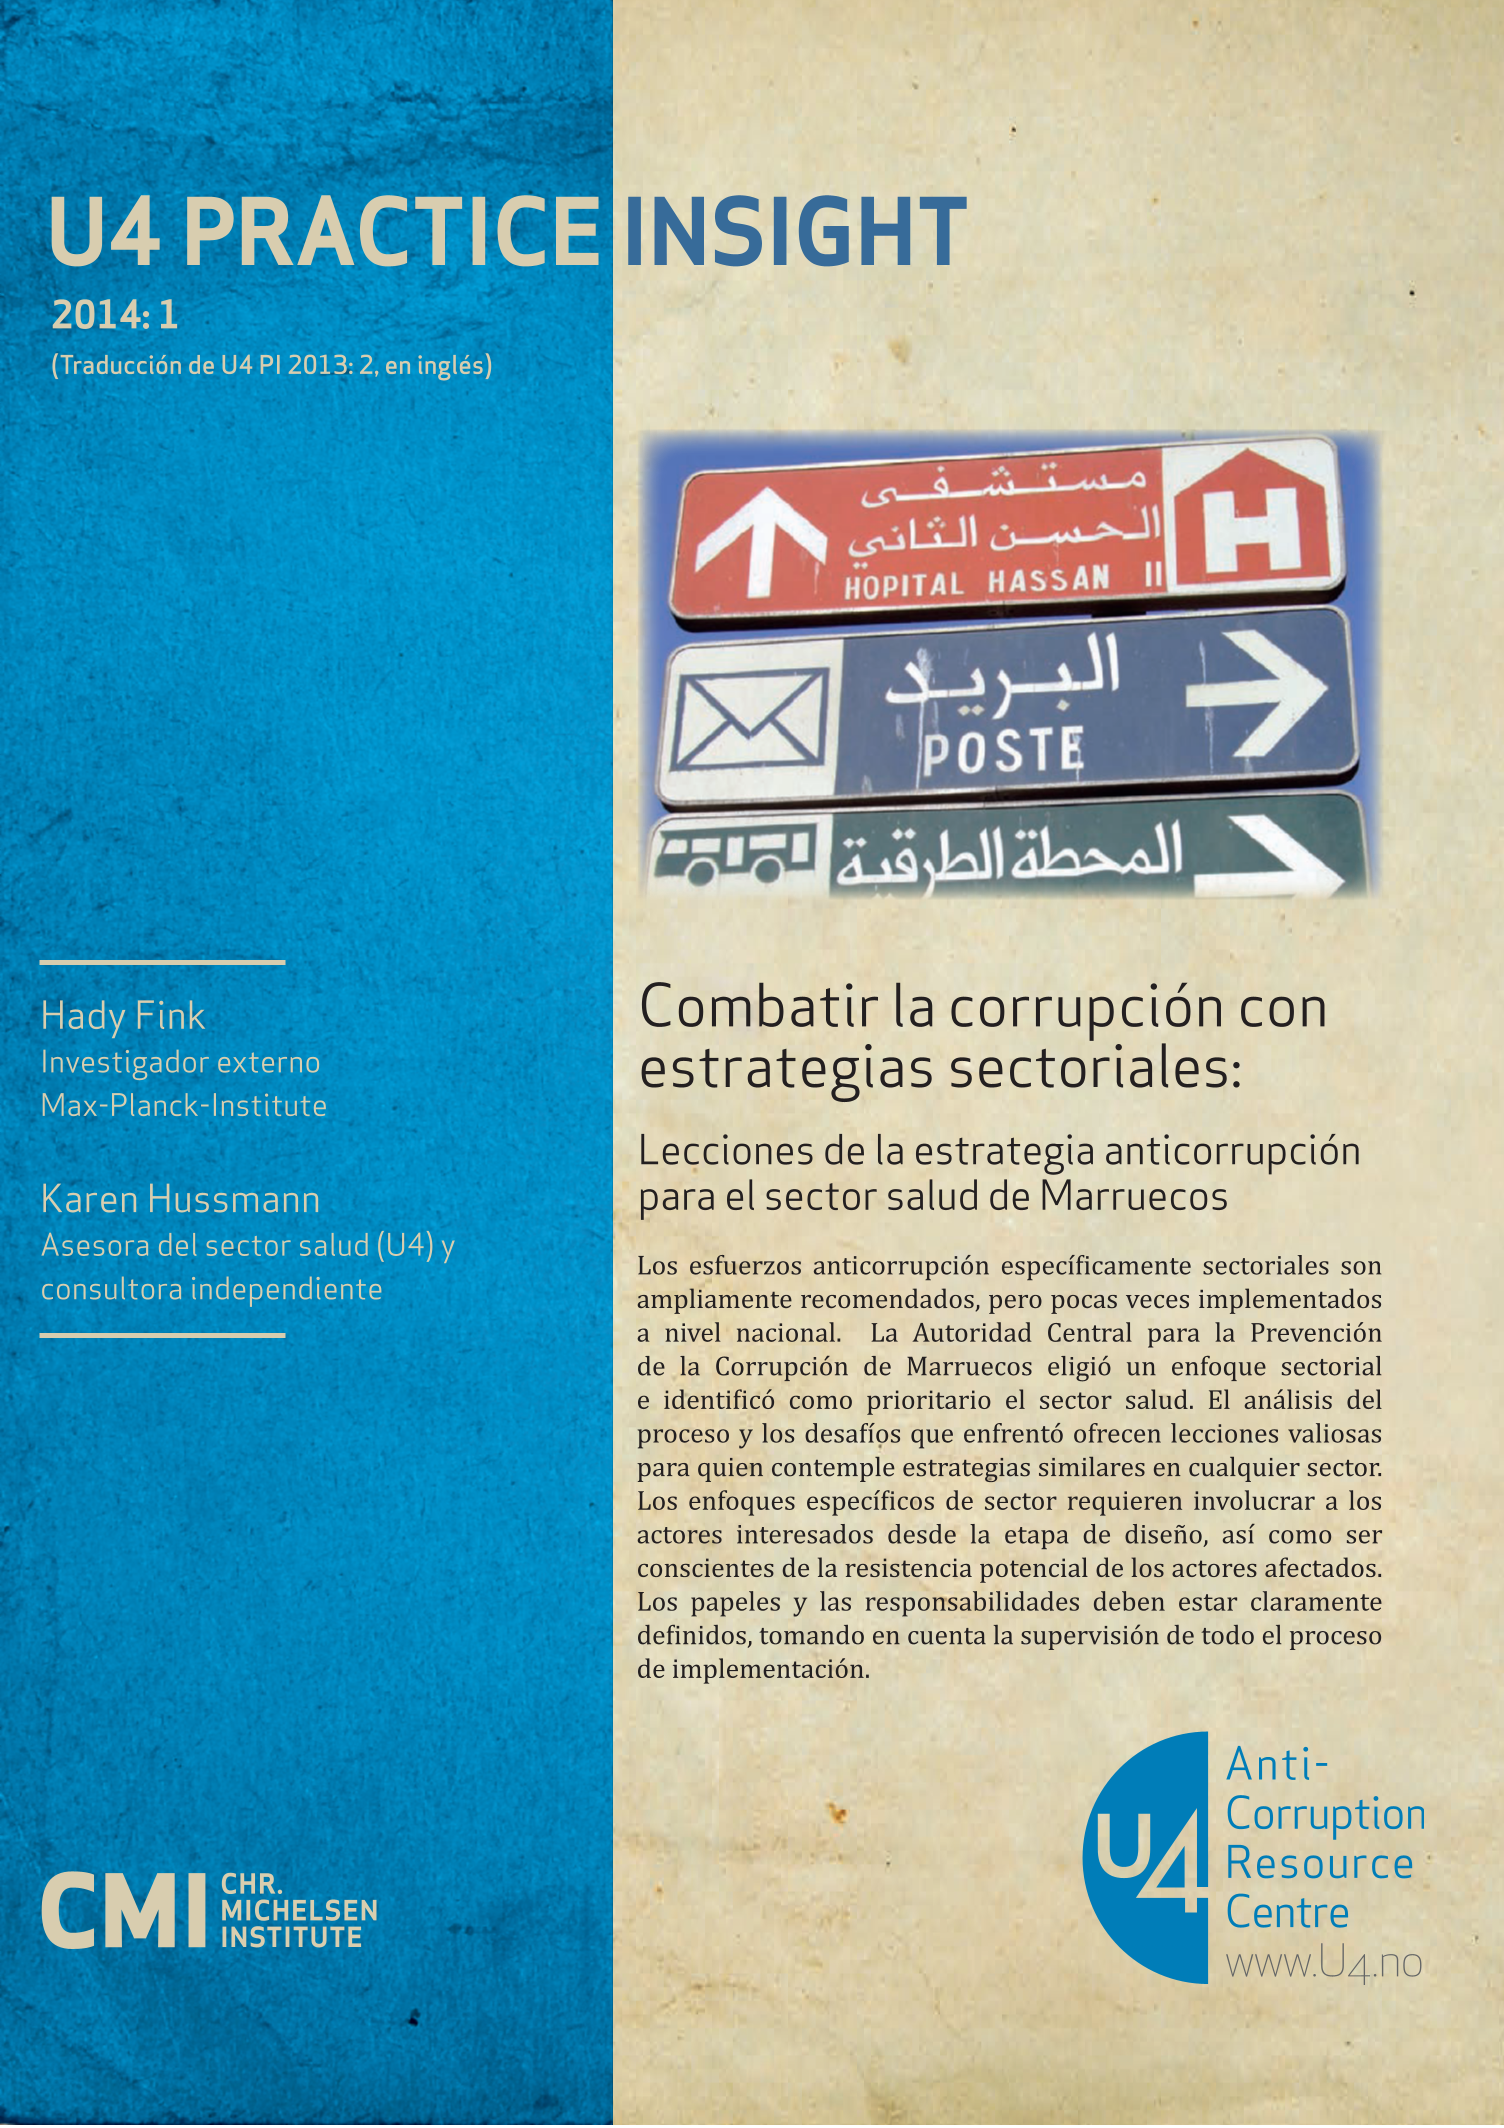 Combatir la corrupción con estrategias sectoriales: Lecciones de la estrategia anticorrupción para el sector salud de Marruecos